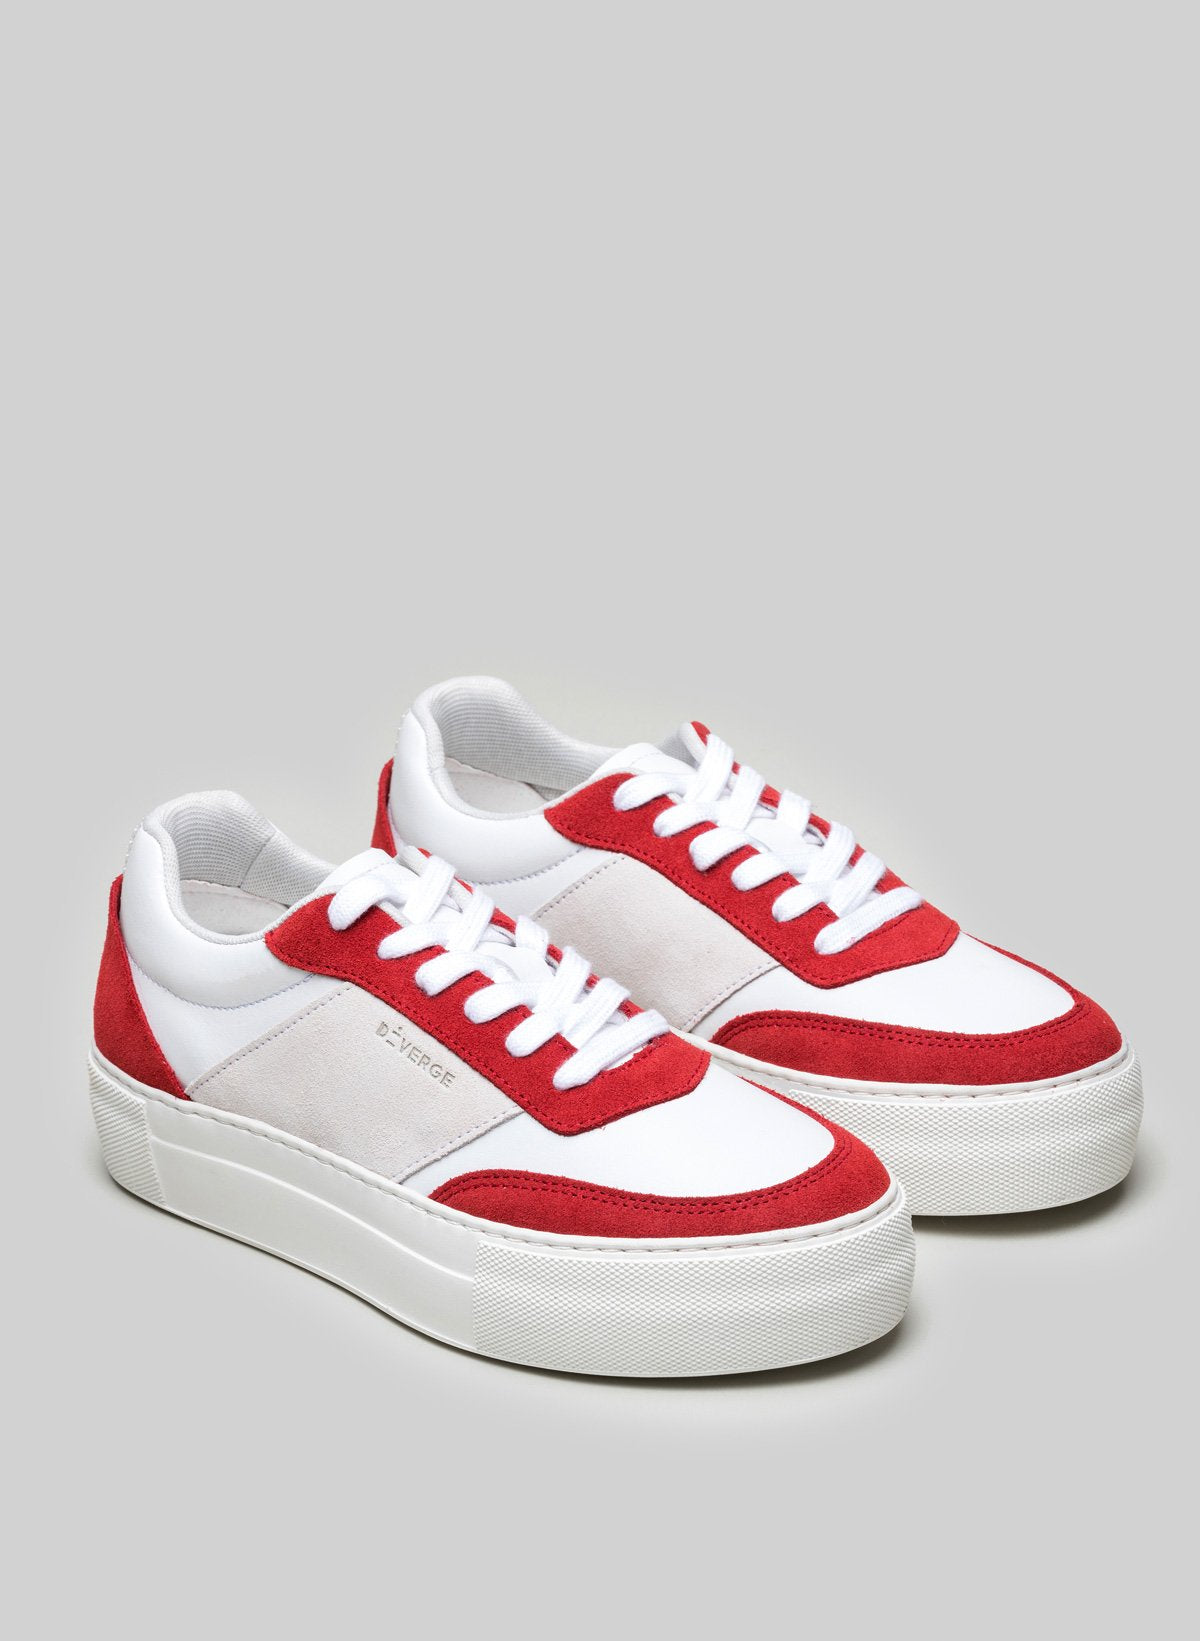 Diverge rot, weiß und grau custom low top sneakers.